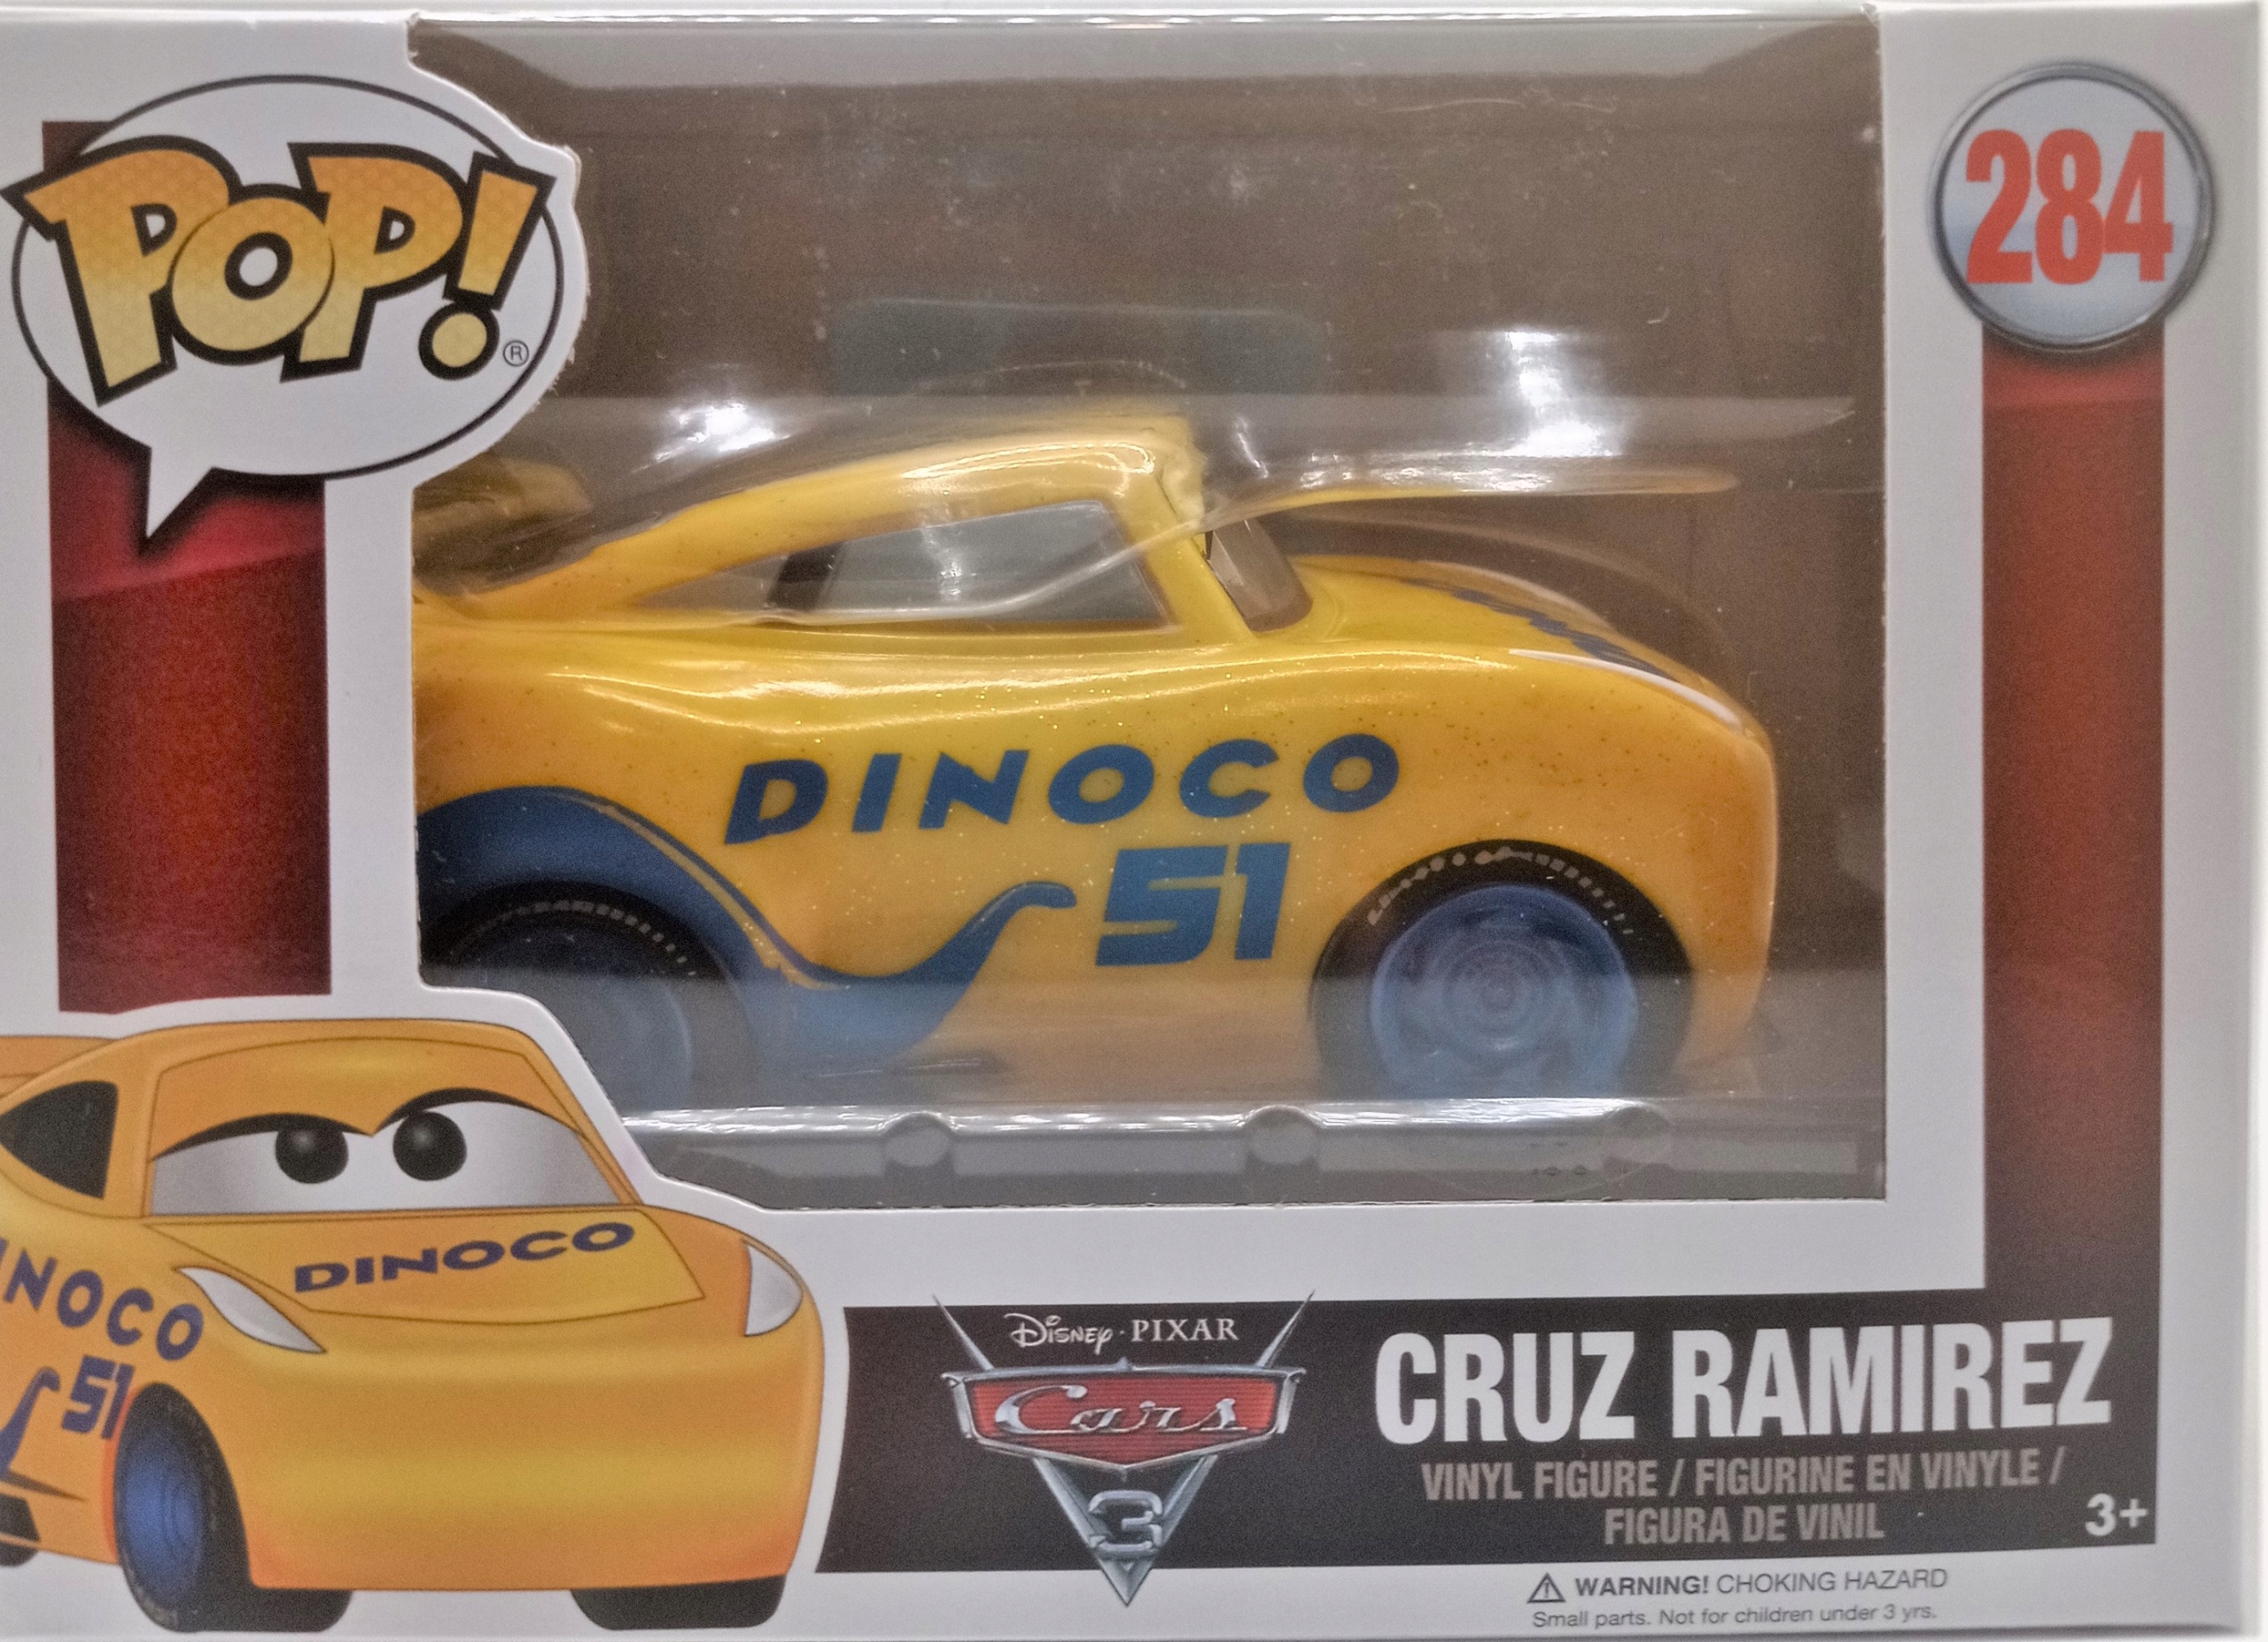 Figurine Cruz Ramirez / Cars / Funko Pop Disney 284